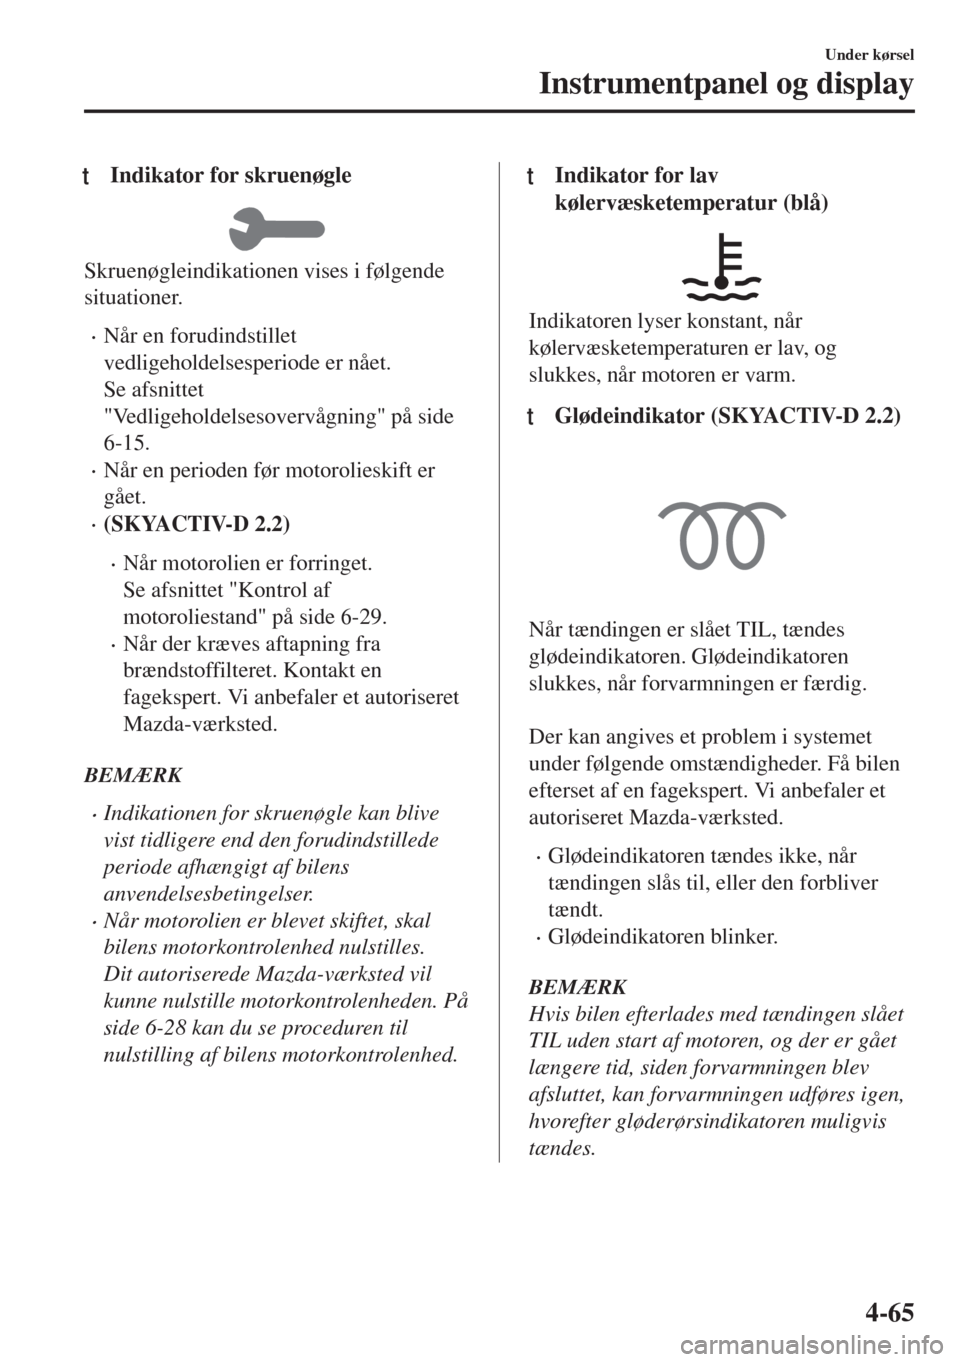 MAZDA MODEL 6 2018  Instruktionsbog (in Danish) tIndikator for skruenøgle
Skruenøgleindikationen vises i følgende
situationer.
•Når en forudindstillet
vedligeholdelsesperiode er nået.
Se afsnittet
"Vedligeholdelsesovervågning" på side
6-15